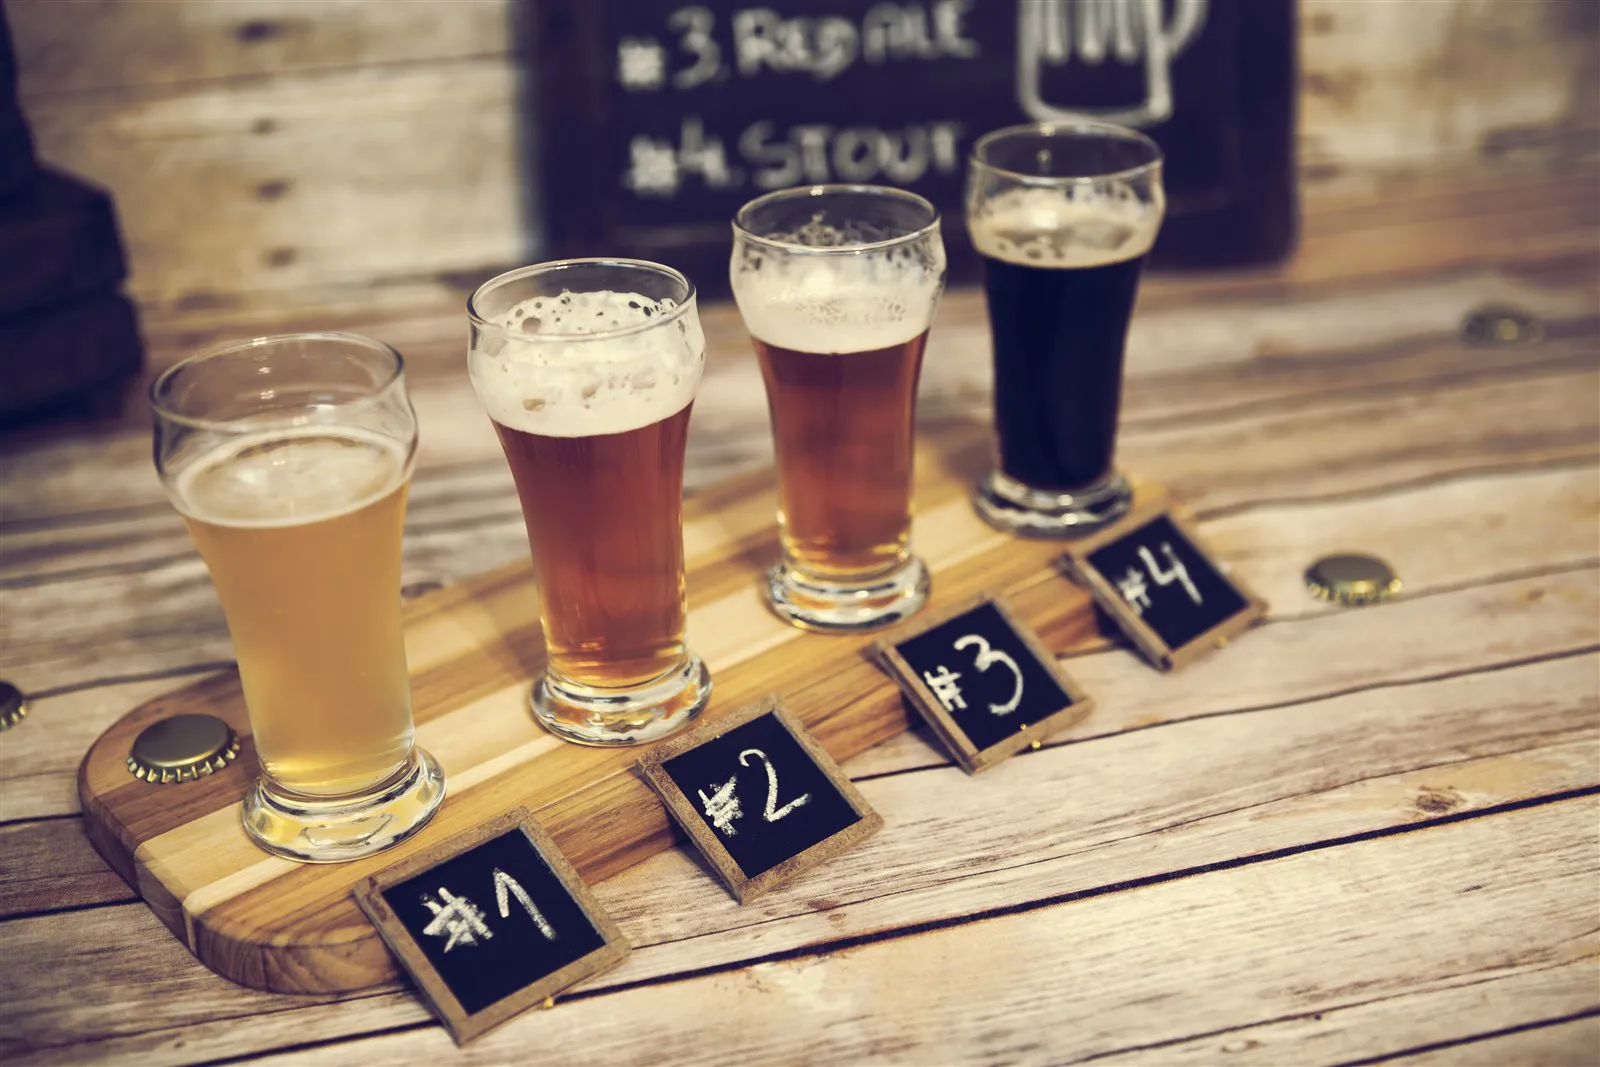 Beers, hops and breweries